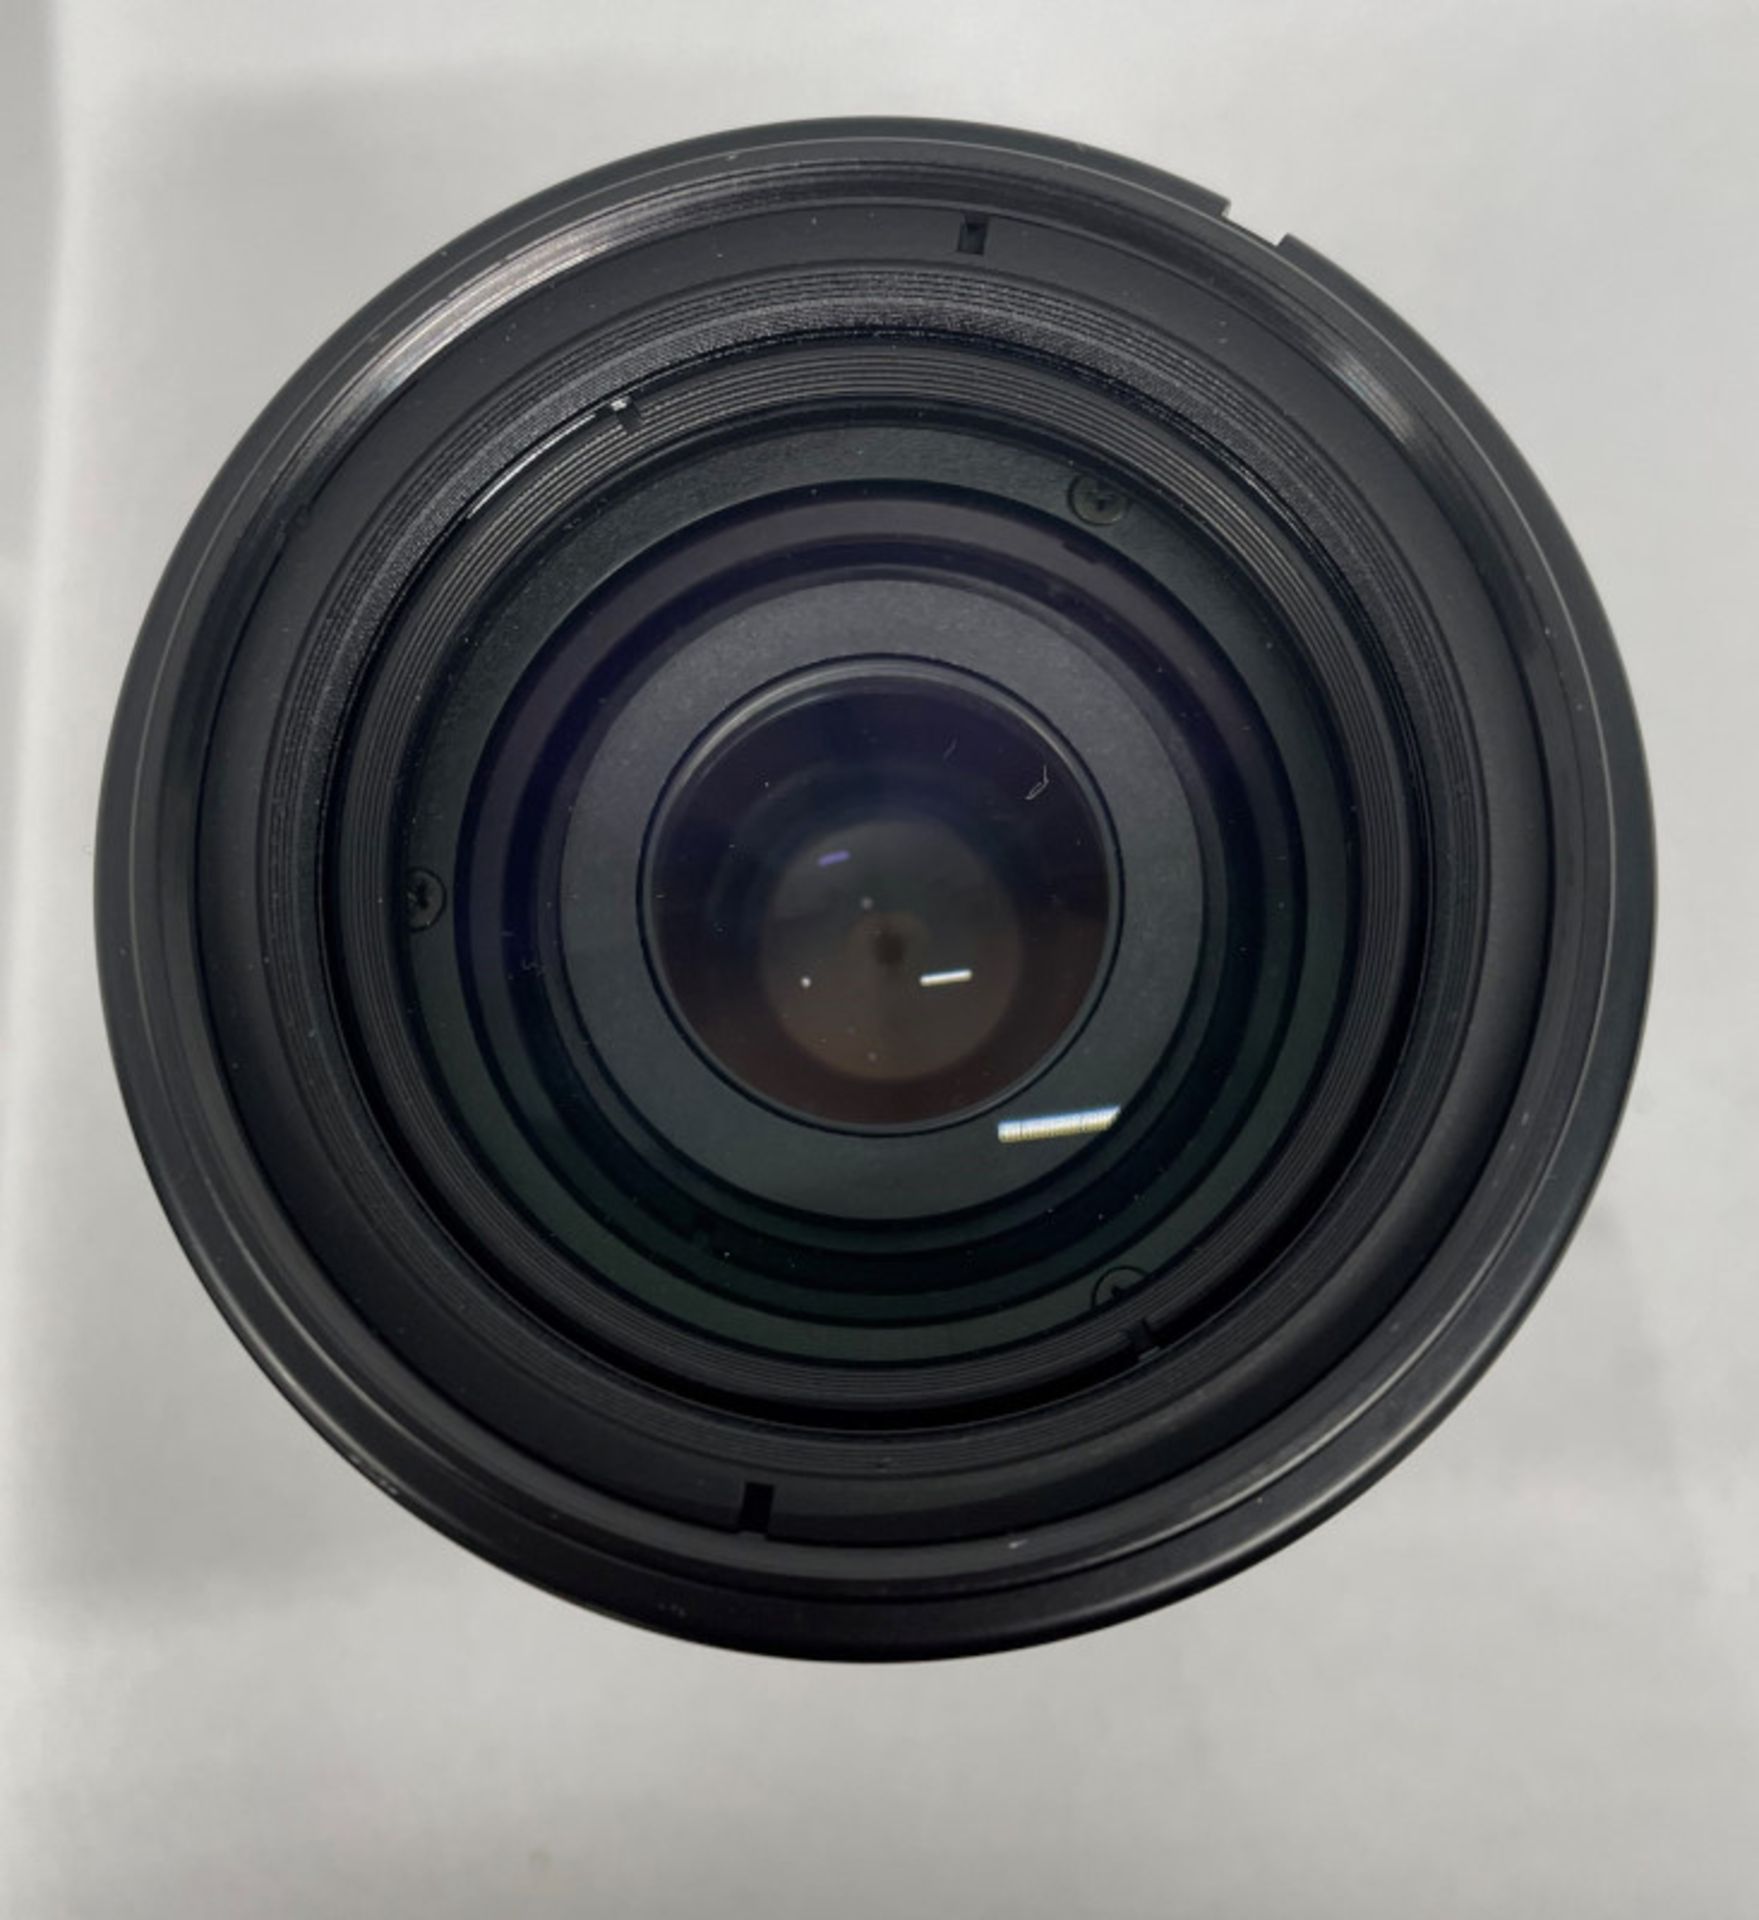 Nikon AF Nikkor 70-210mm - 1:4-5.6 Lens - Serial No. 2432176 with HOYA 62mm UV(O) Filter - Image 4 of 7